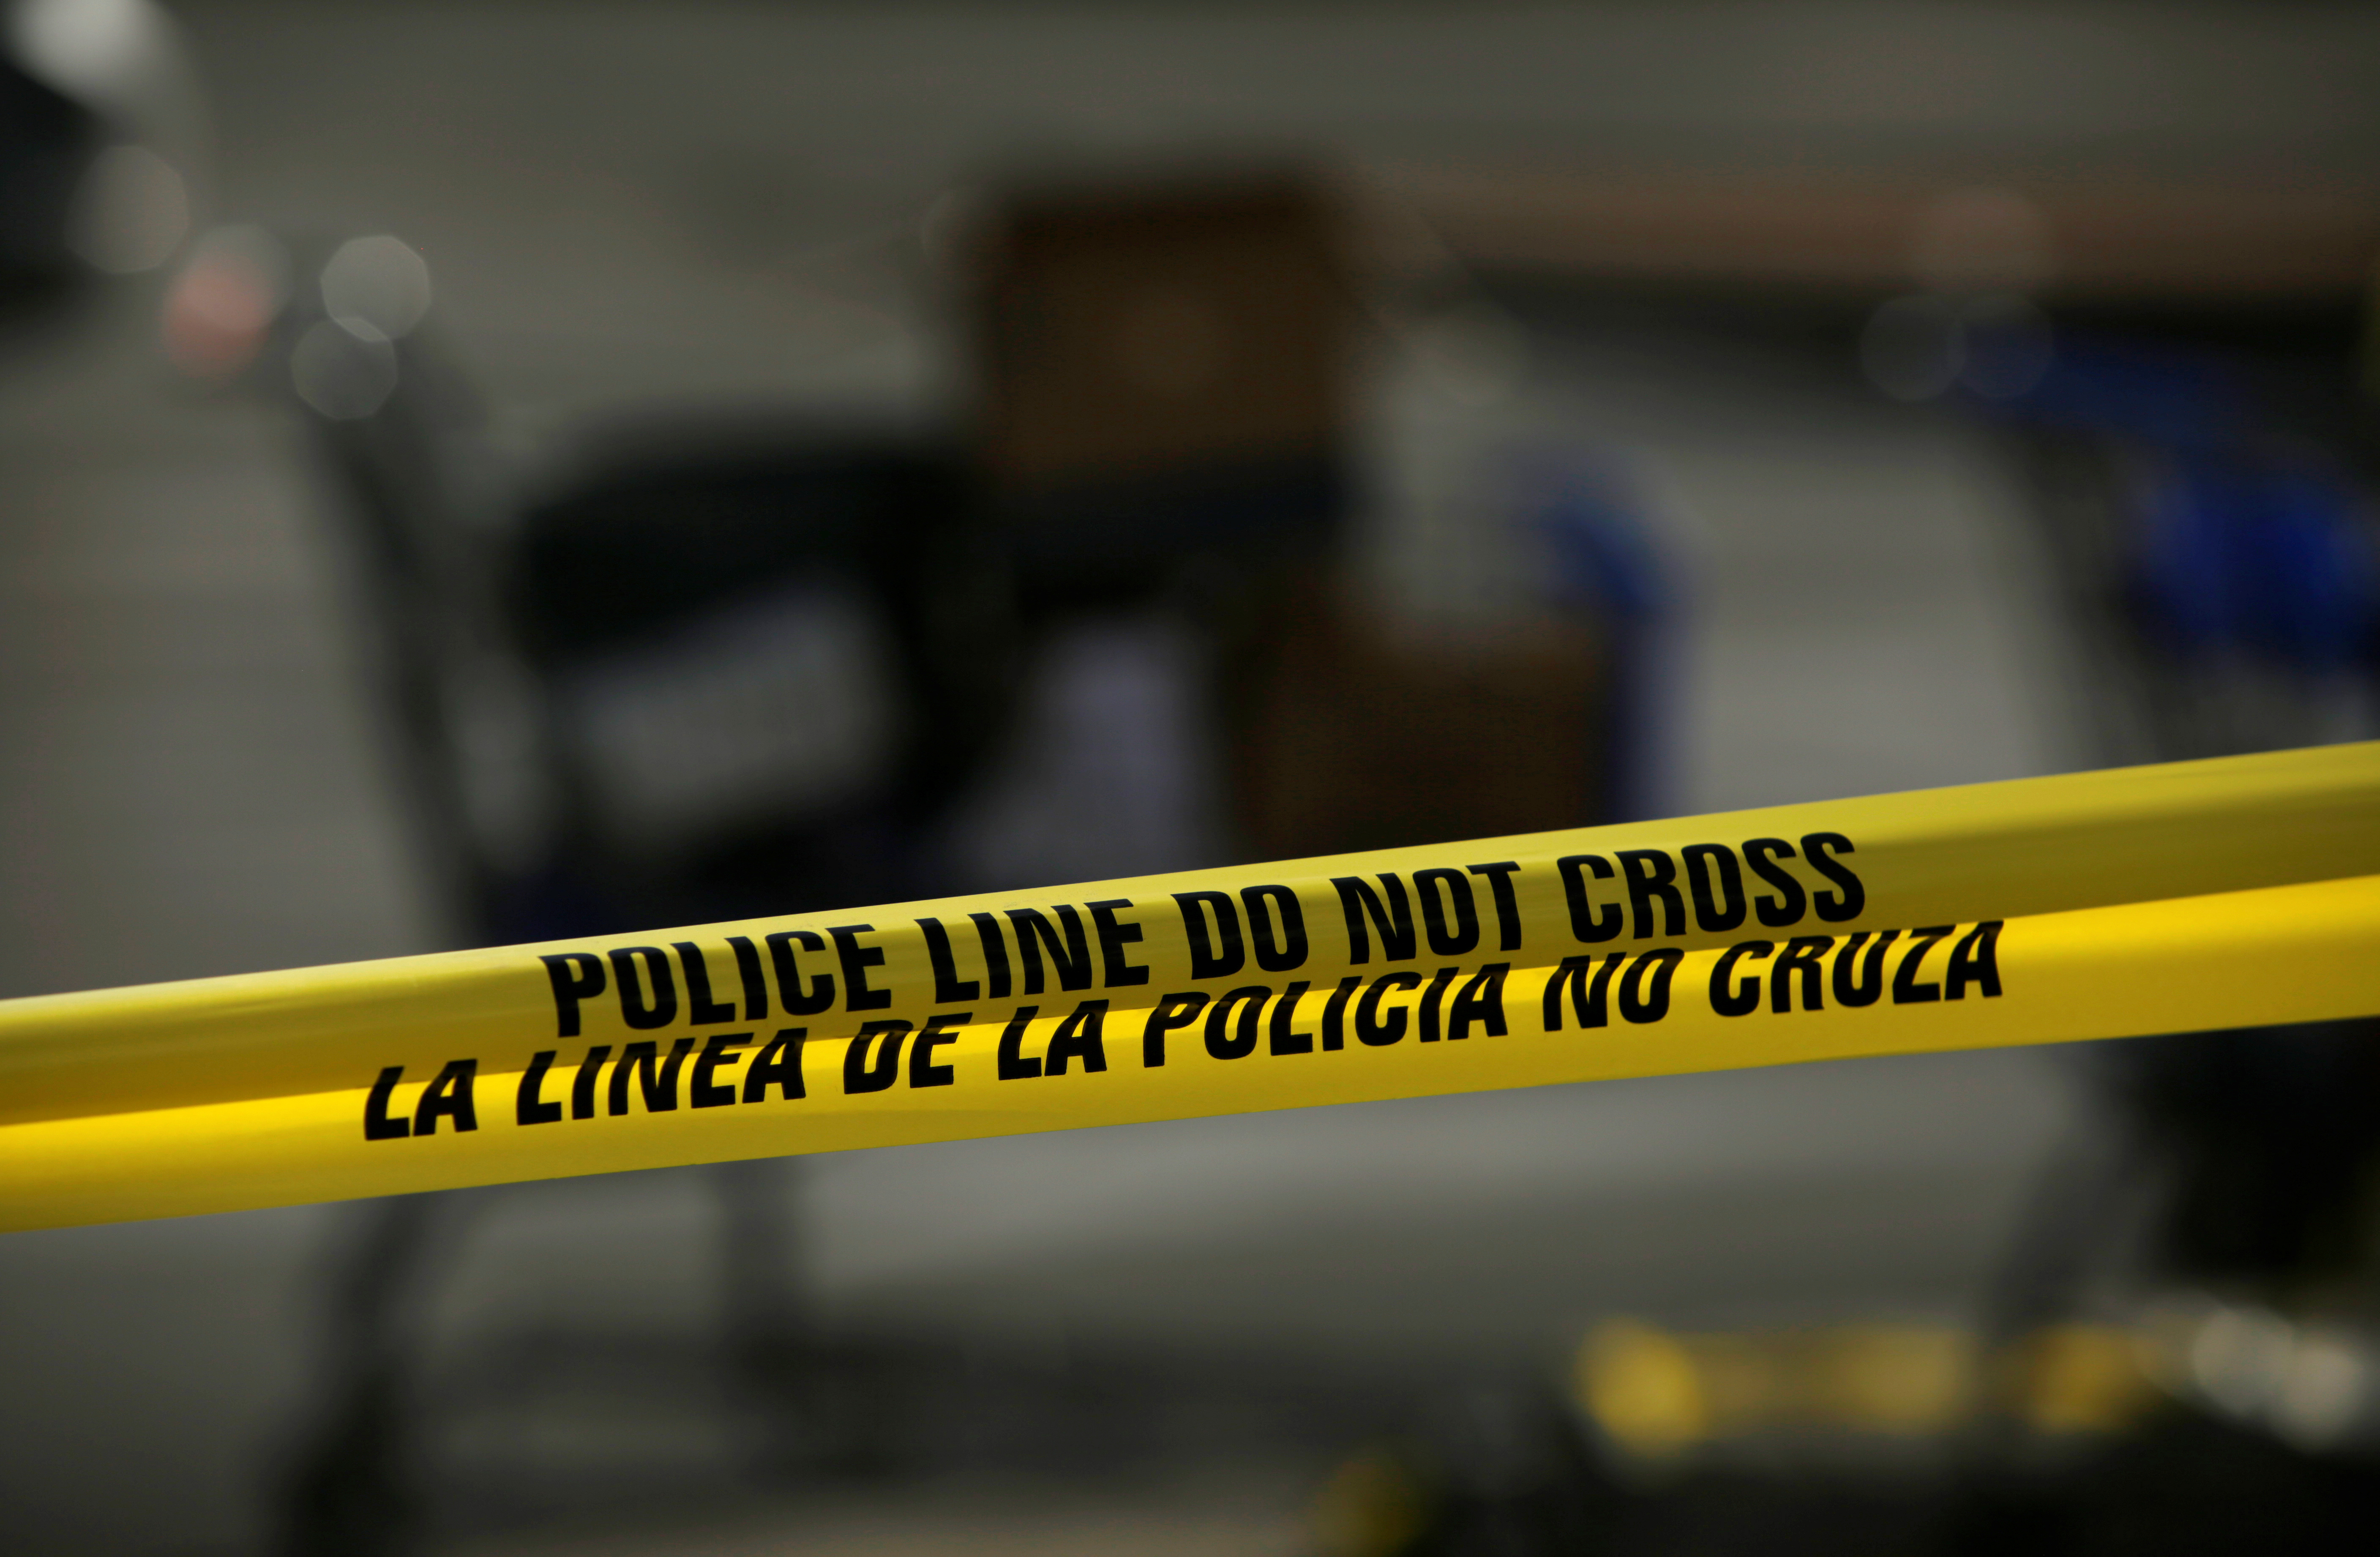 Σαν Ντιέγκο: Πυροβολισμοί και μακελειό σε σπίτι -5 νεκροί, μεταξύ τους 3 παιδιά